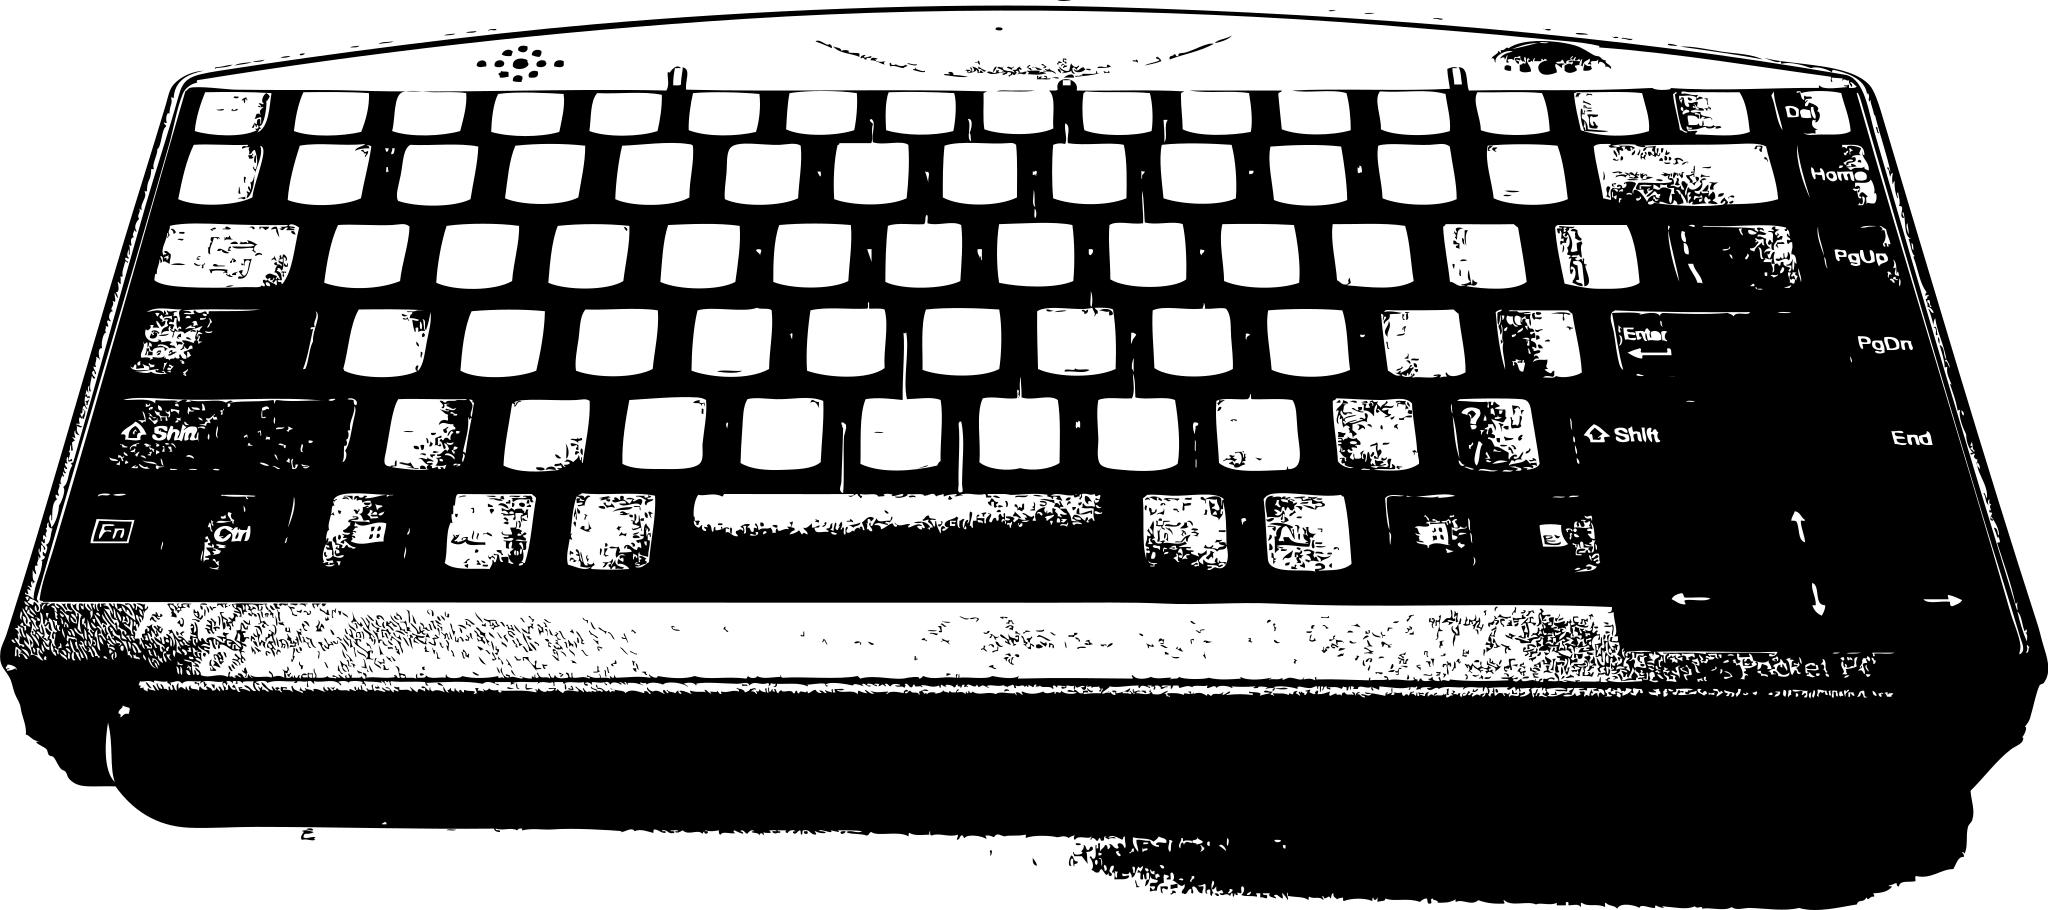 Внешний вид клавиатуры компьютера